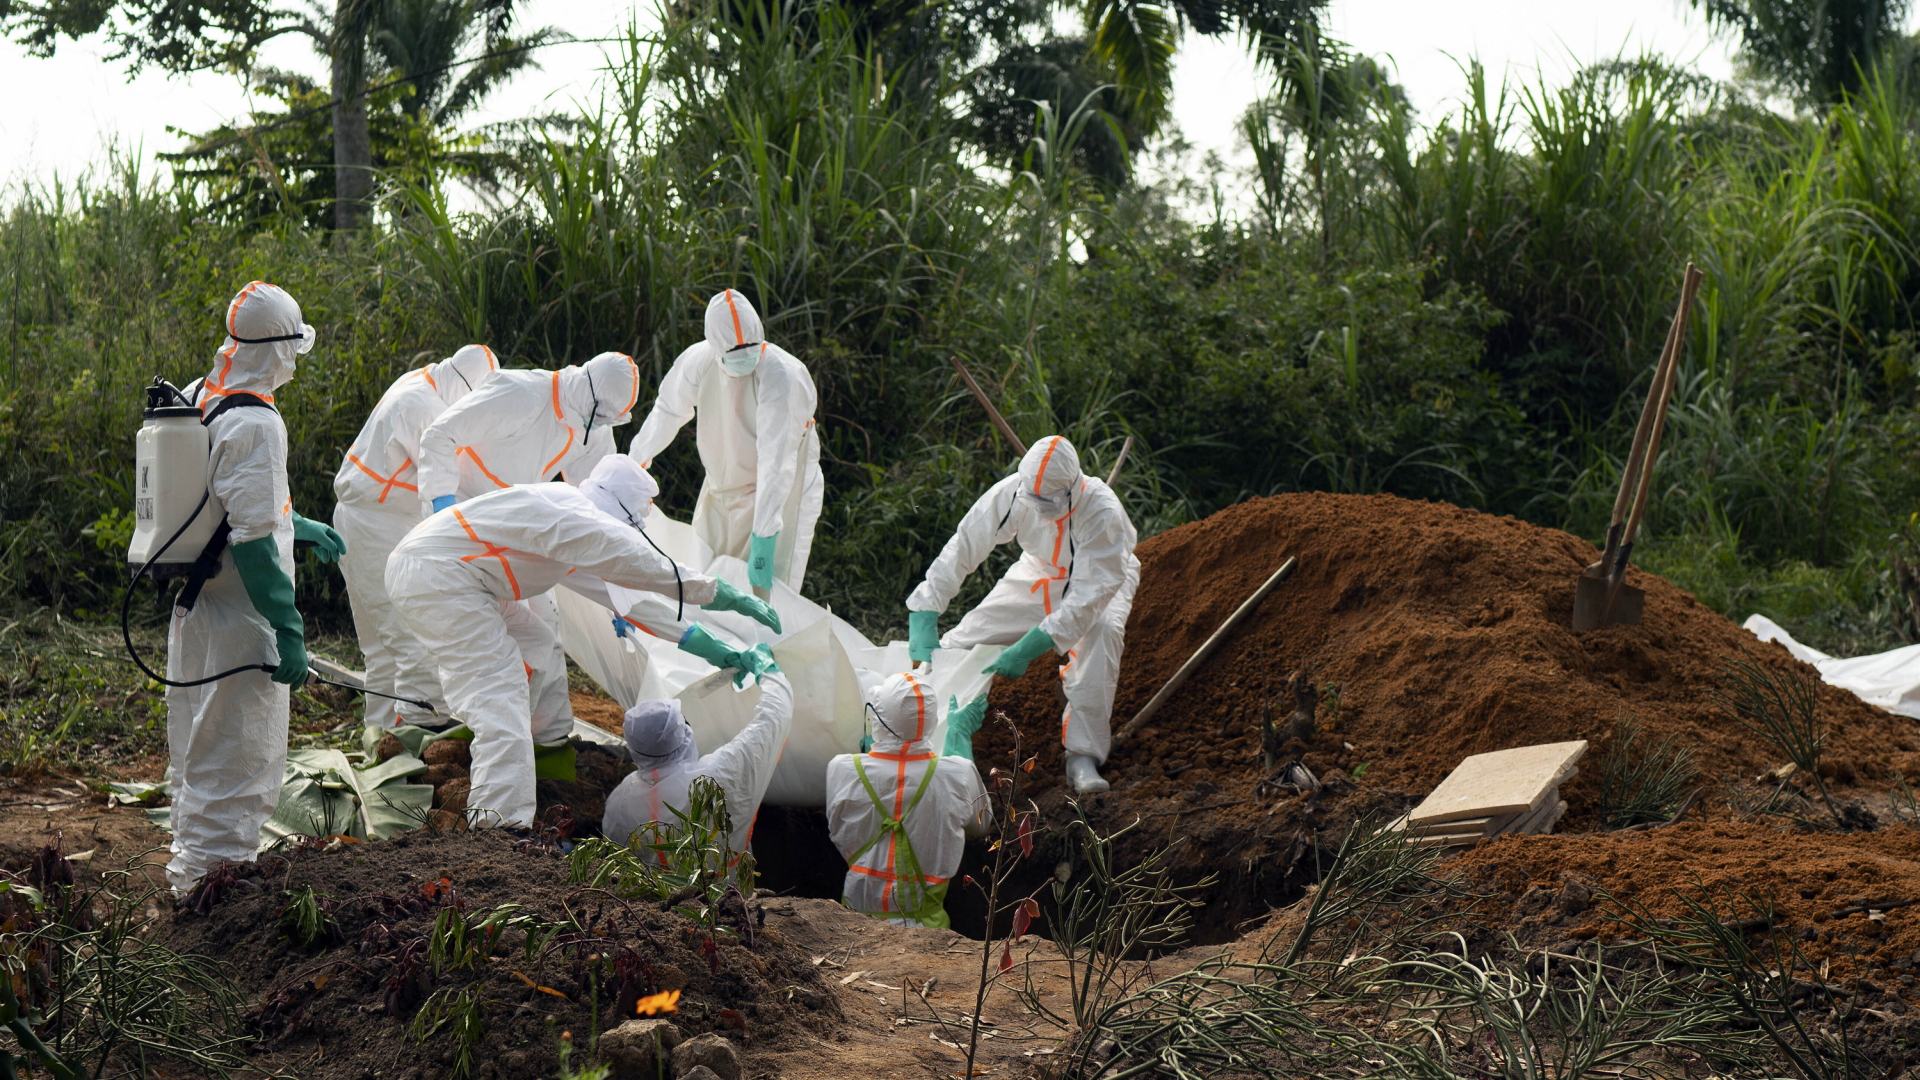 Hilfskräfte in Schutzanzügen beerdigen im Juli 2019 ein Ebola-Opfer im Kongo. | dpa